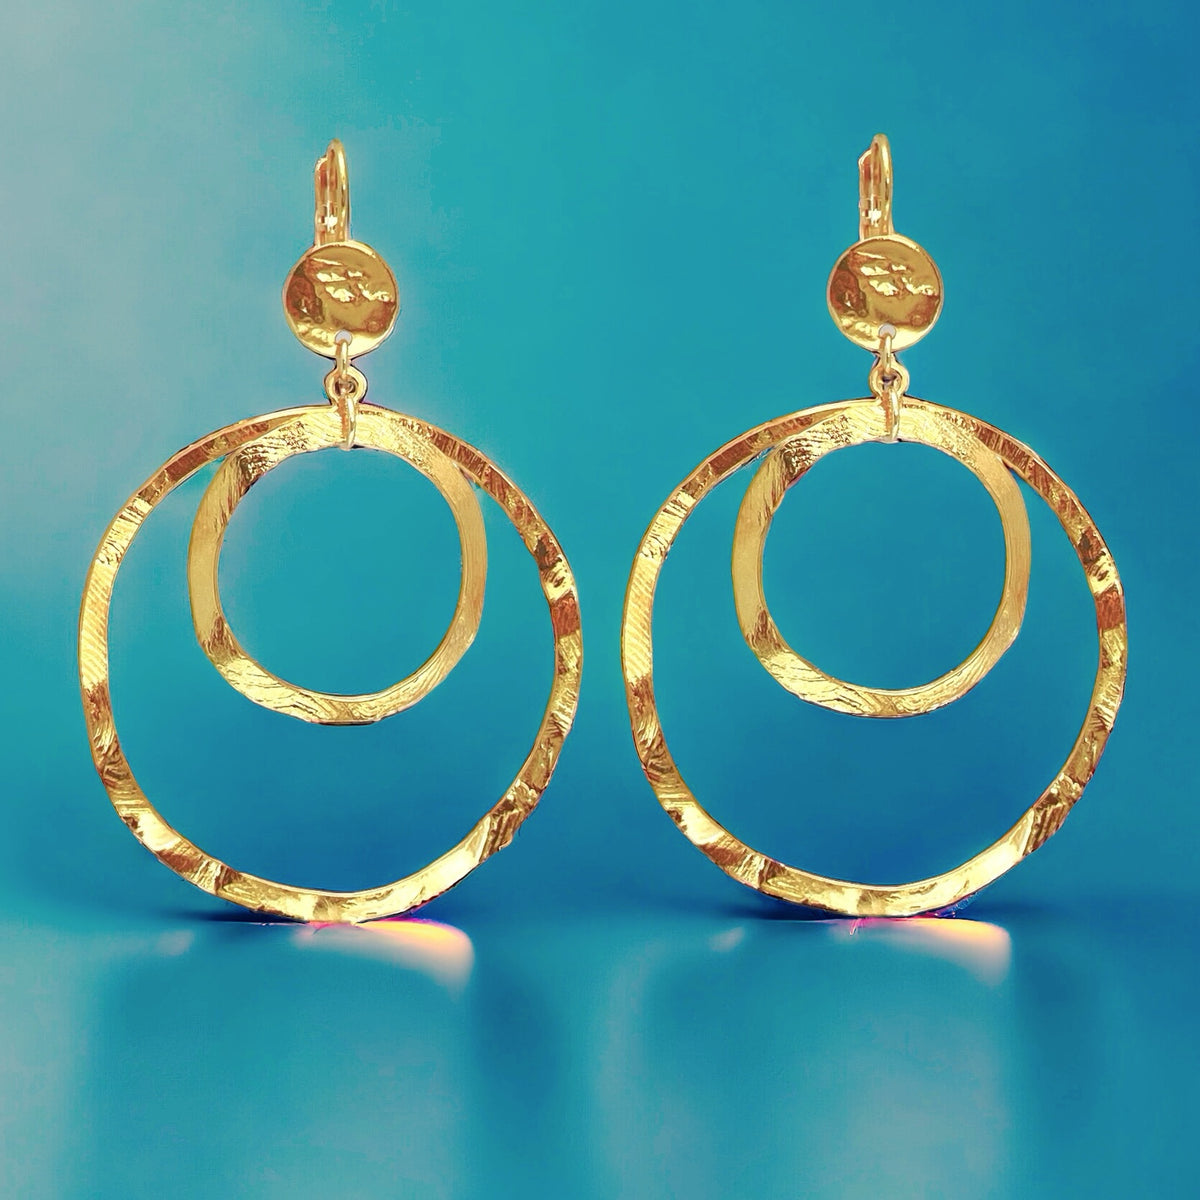 Grandes boucles d'oreilles créoles dorées à double anneau en métal martelé, avec attaches-dormeuses, sur fond bleu